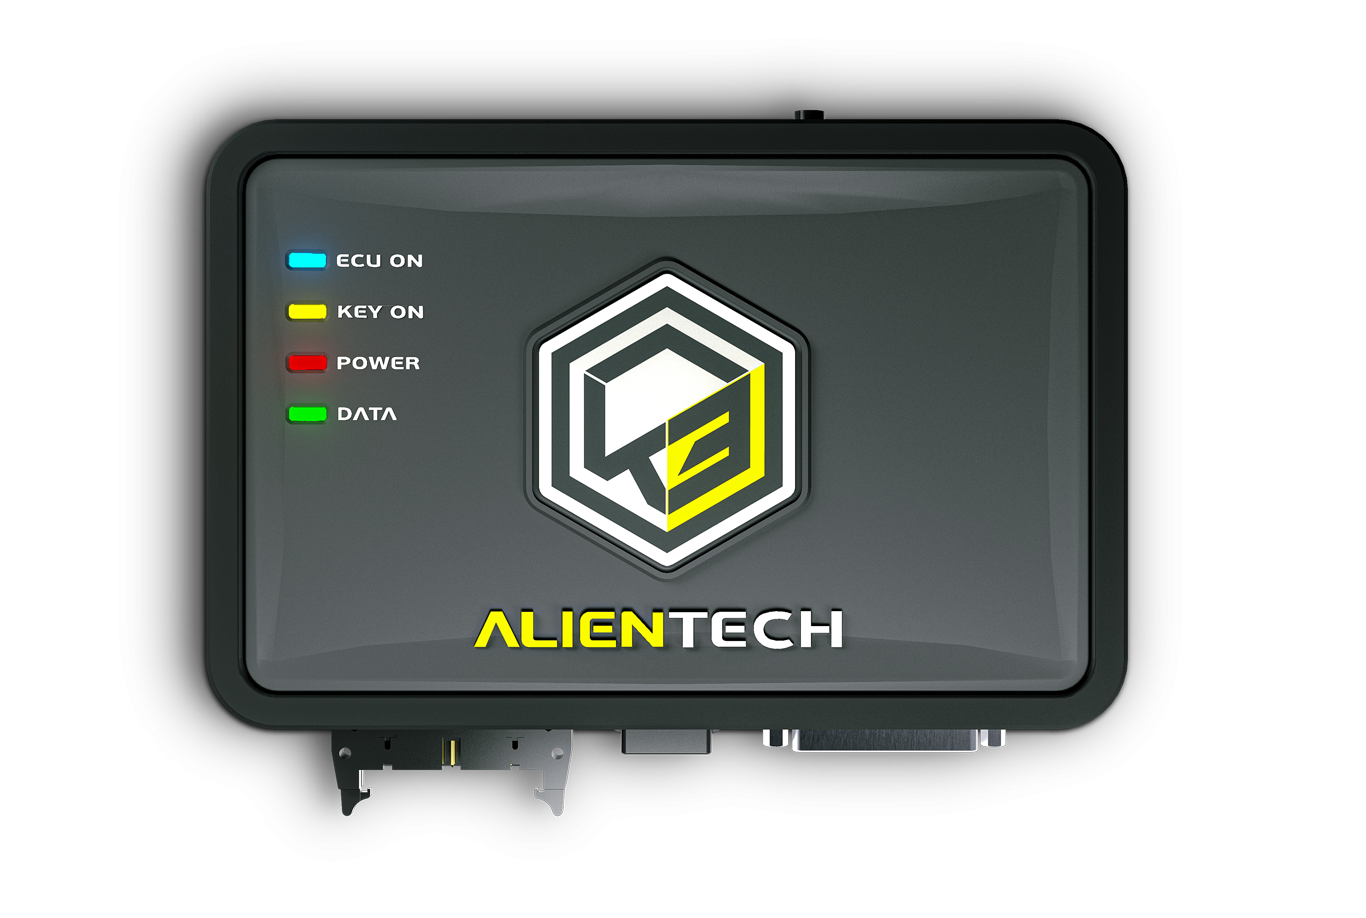 AlientechKess35 9c78ad86